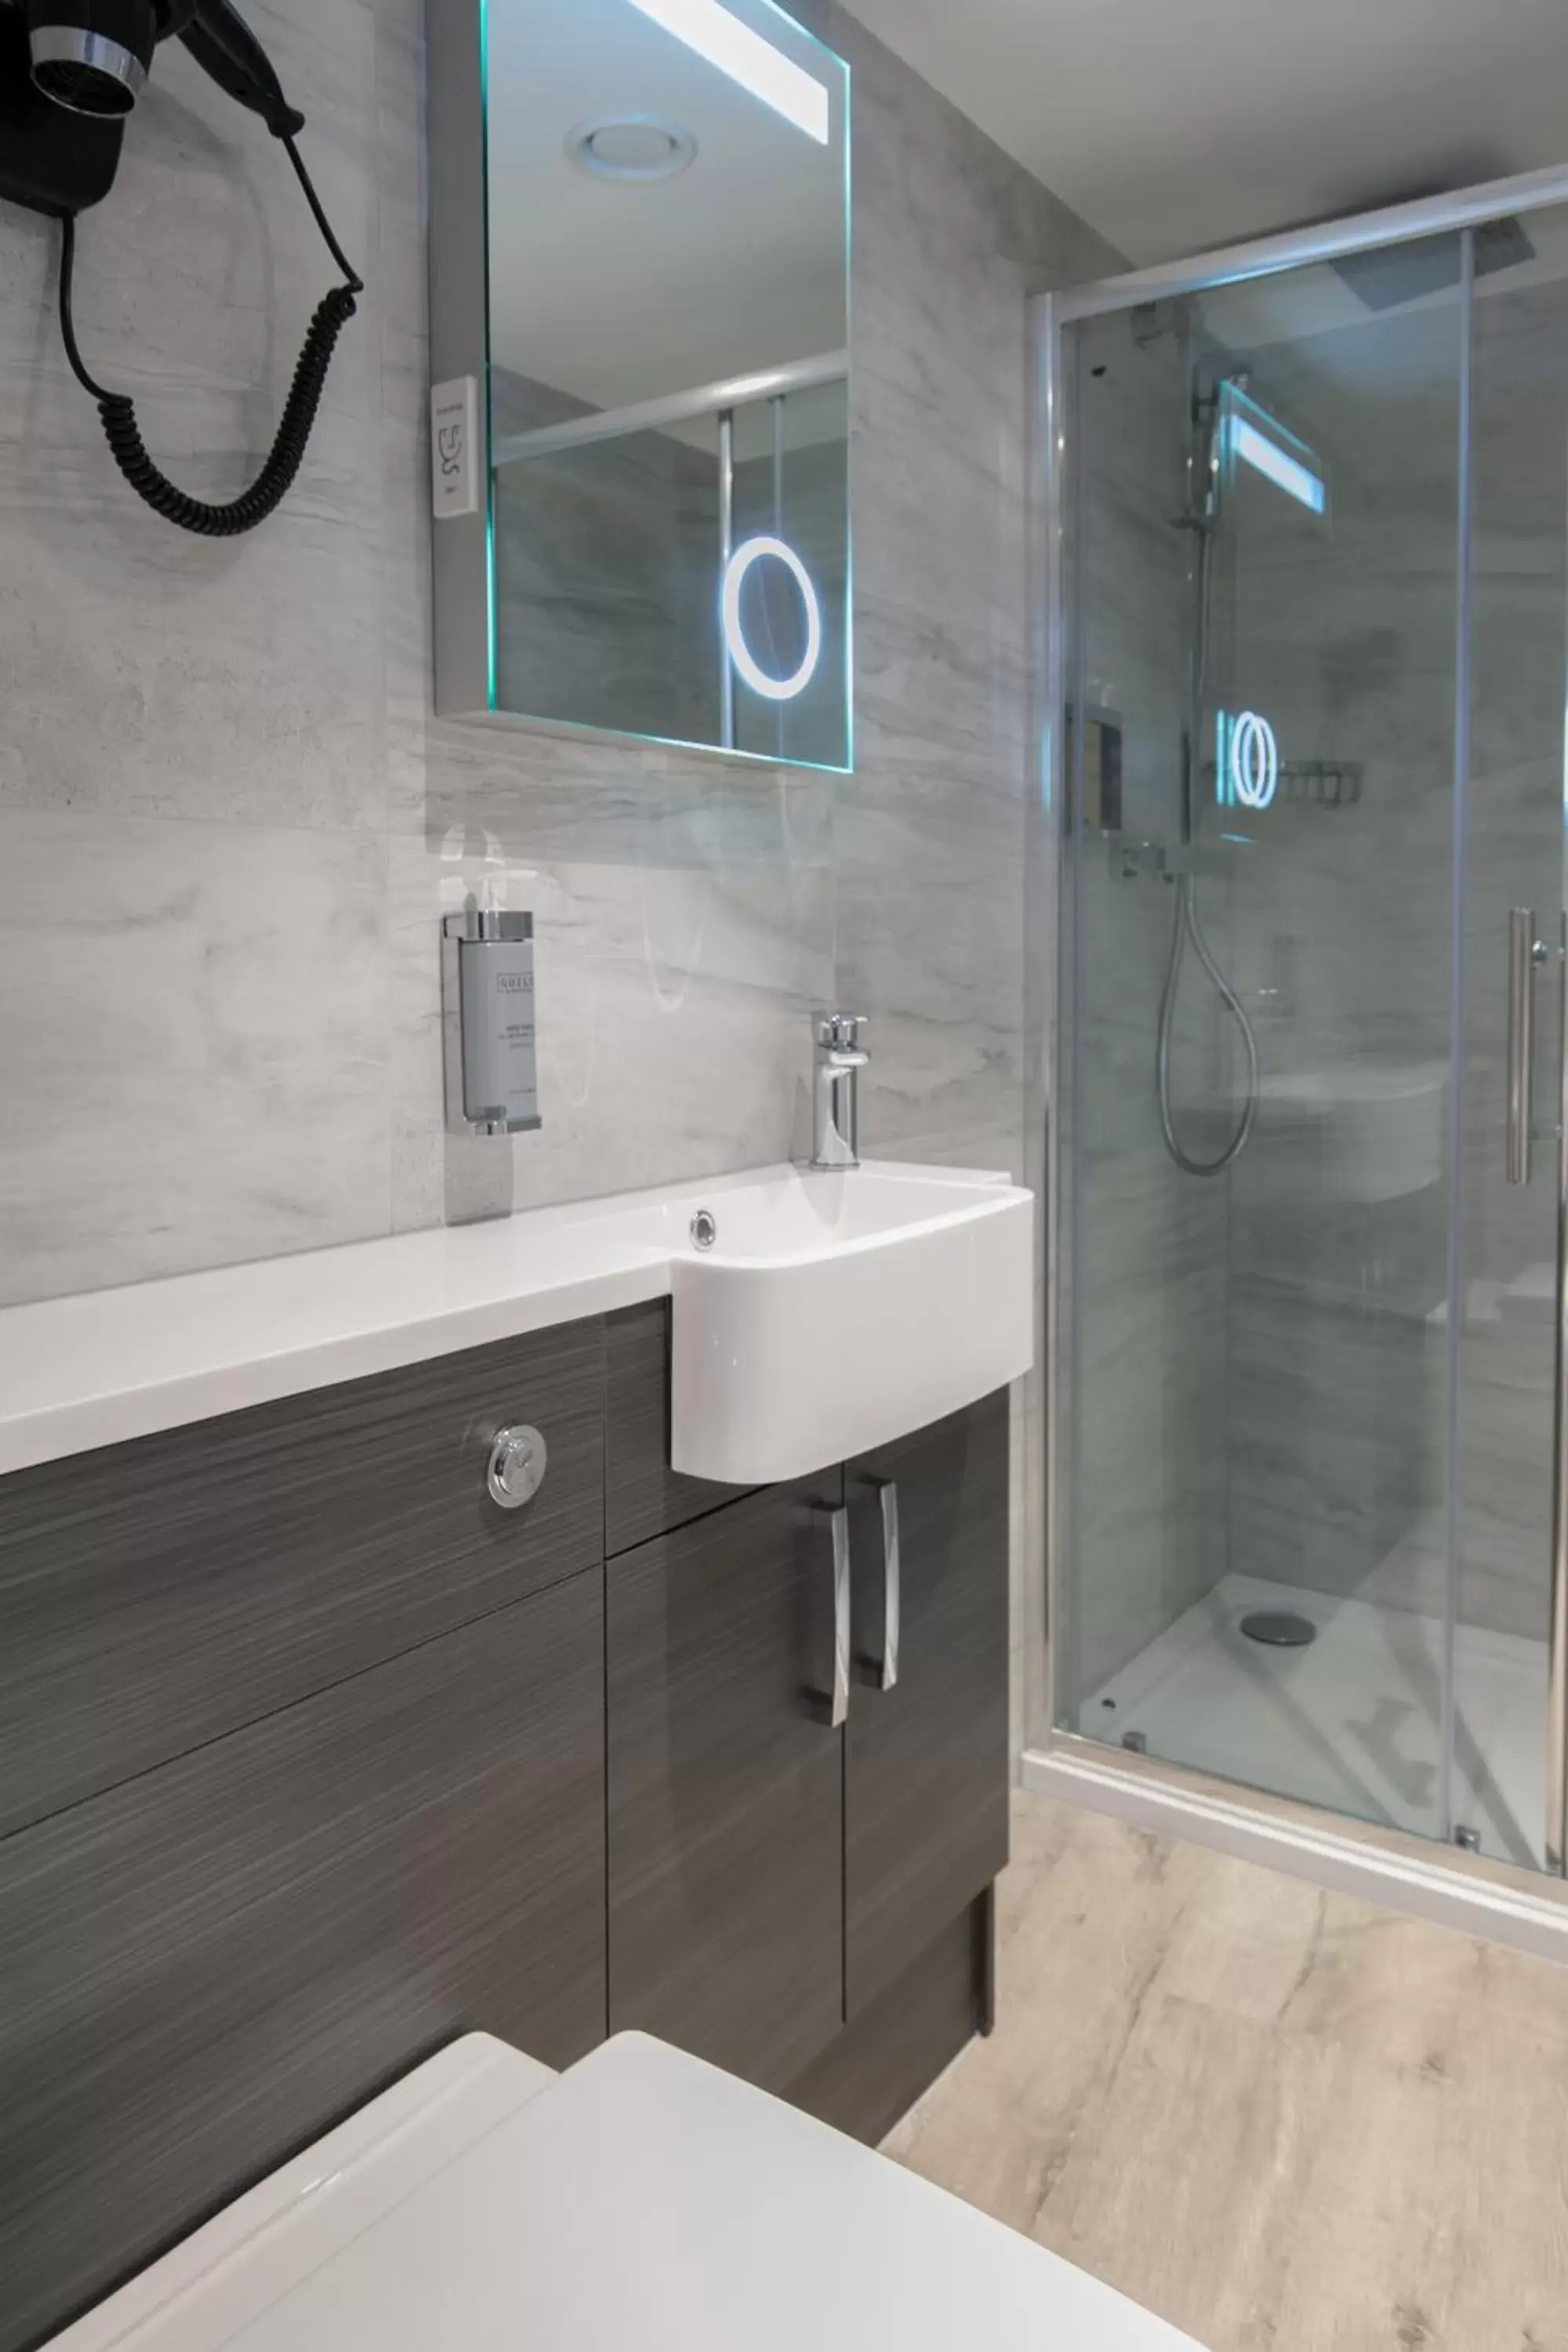 Shower, Bathroom in Sadie Best Western Hotel at Luton